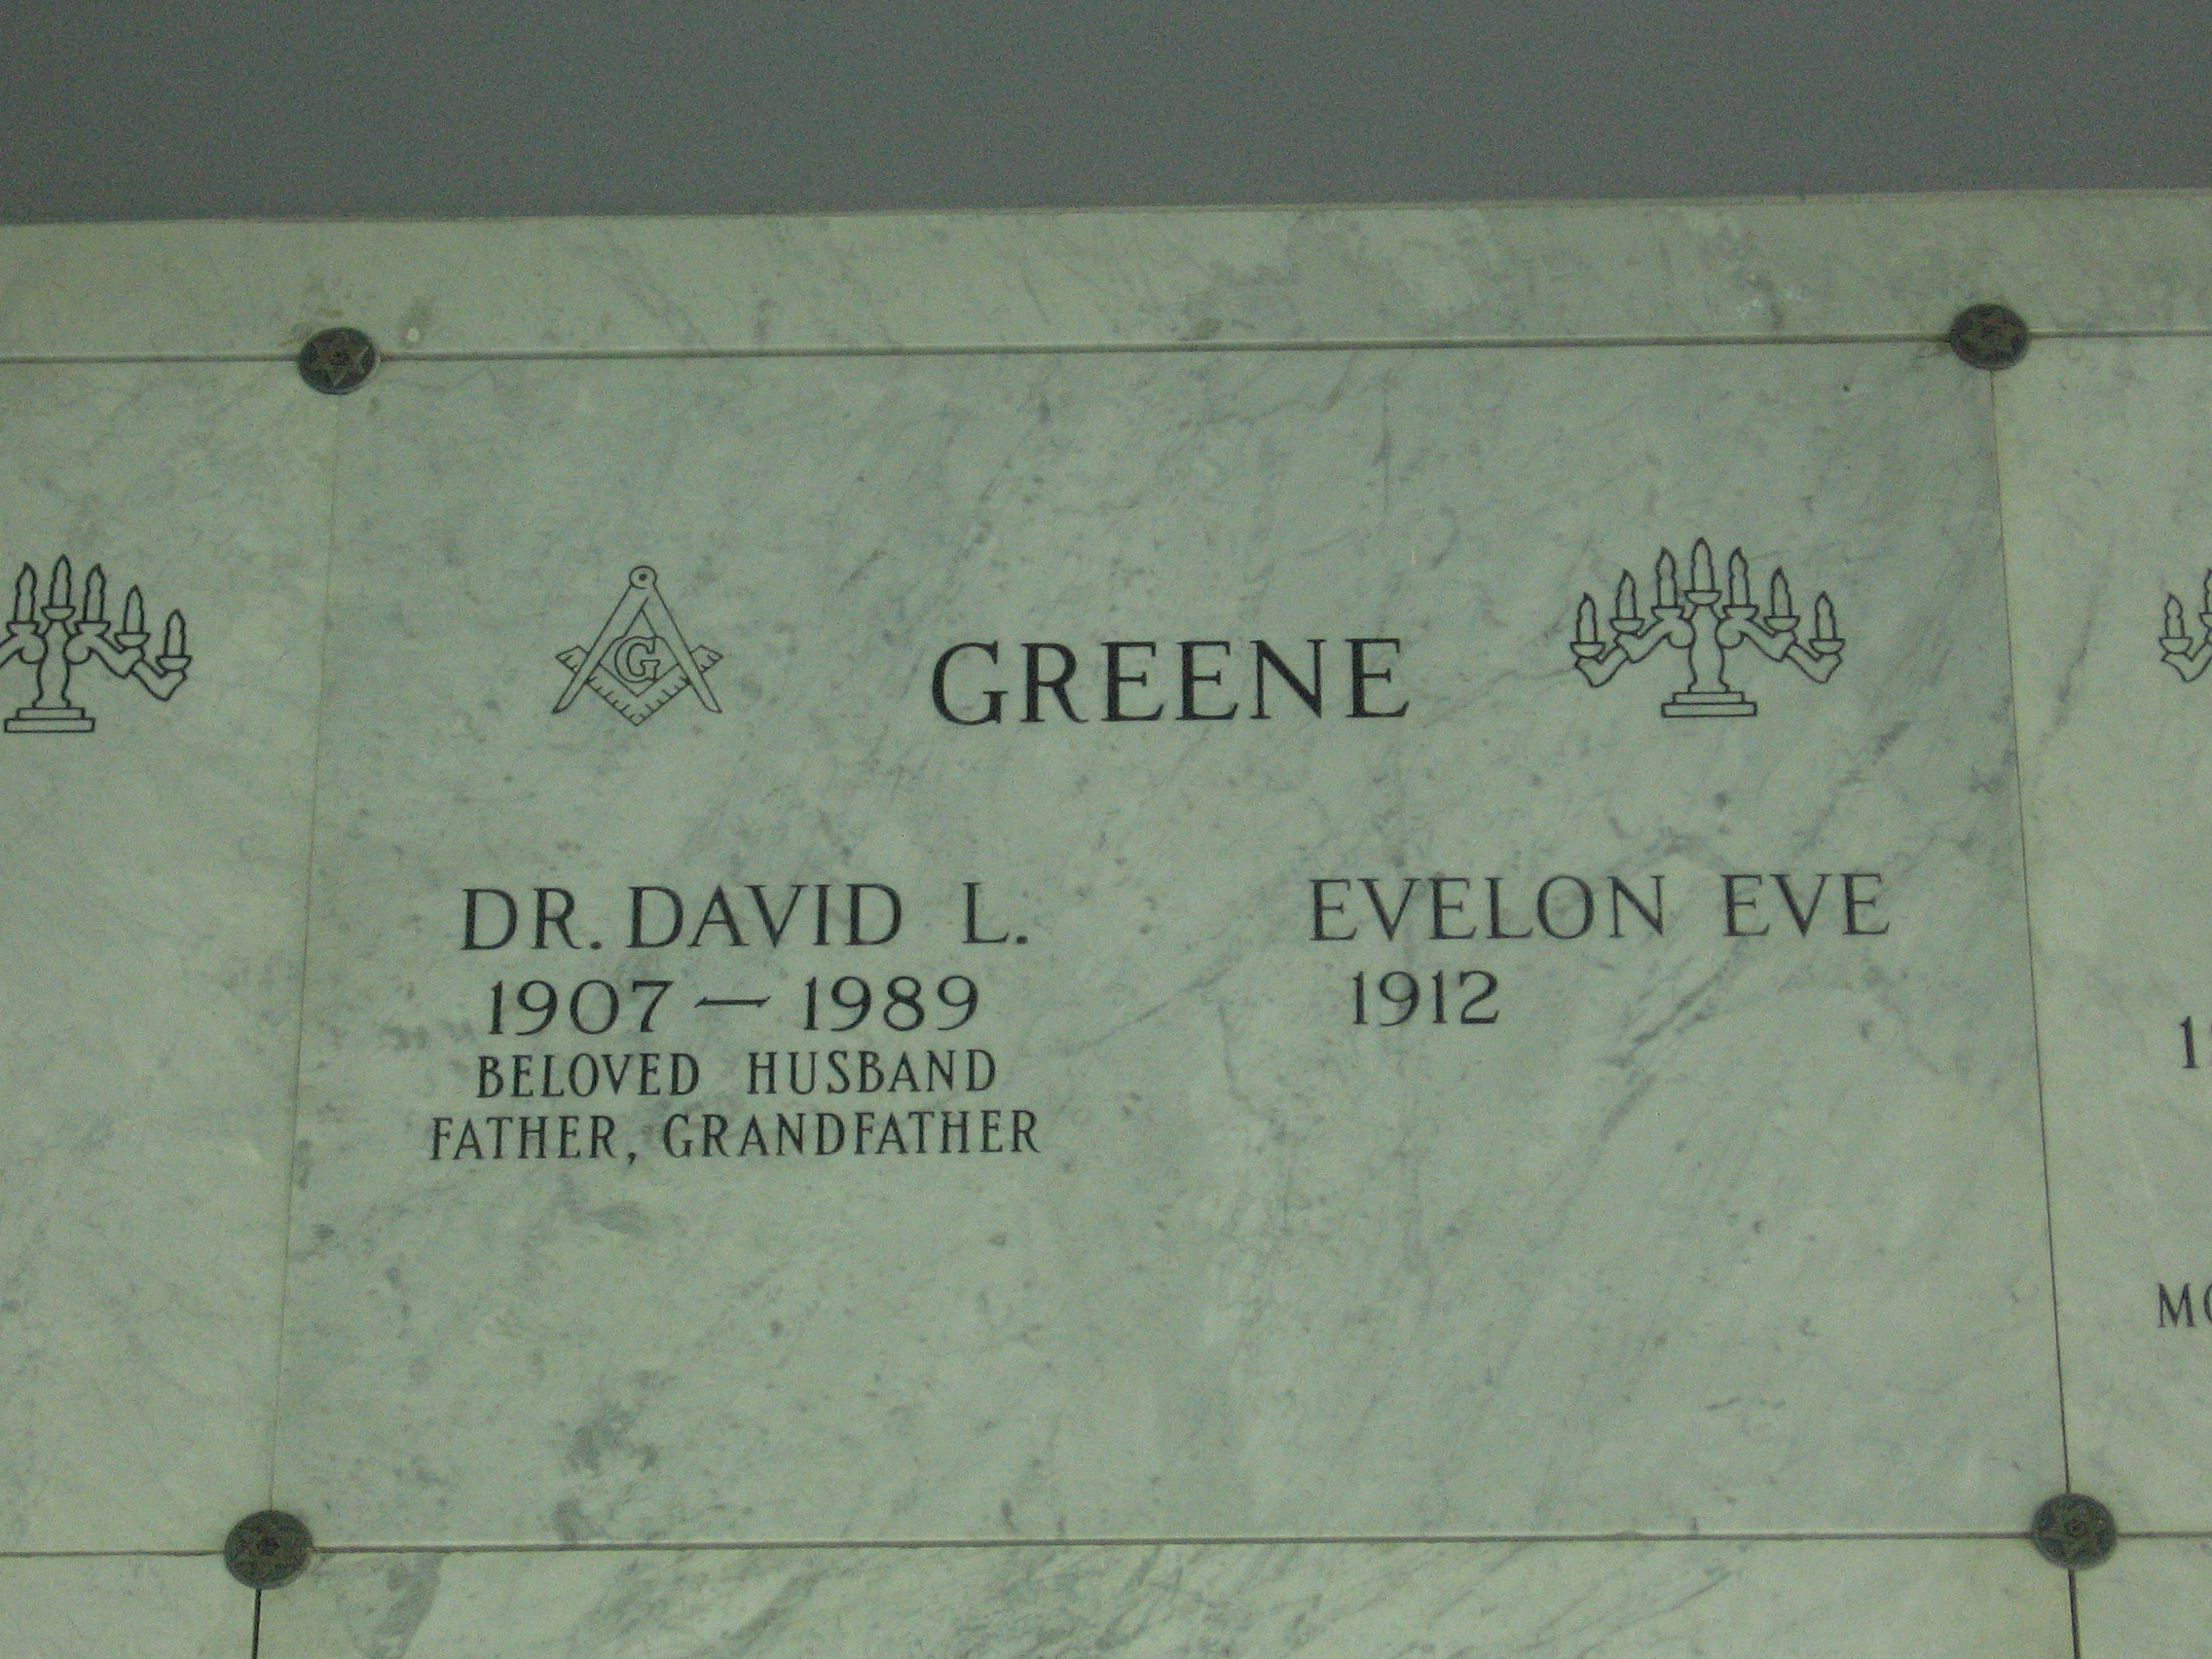 Dr David L Greene